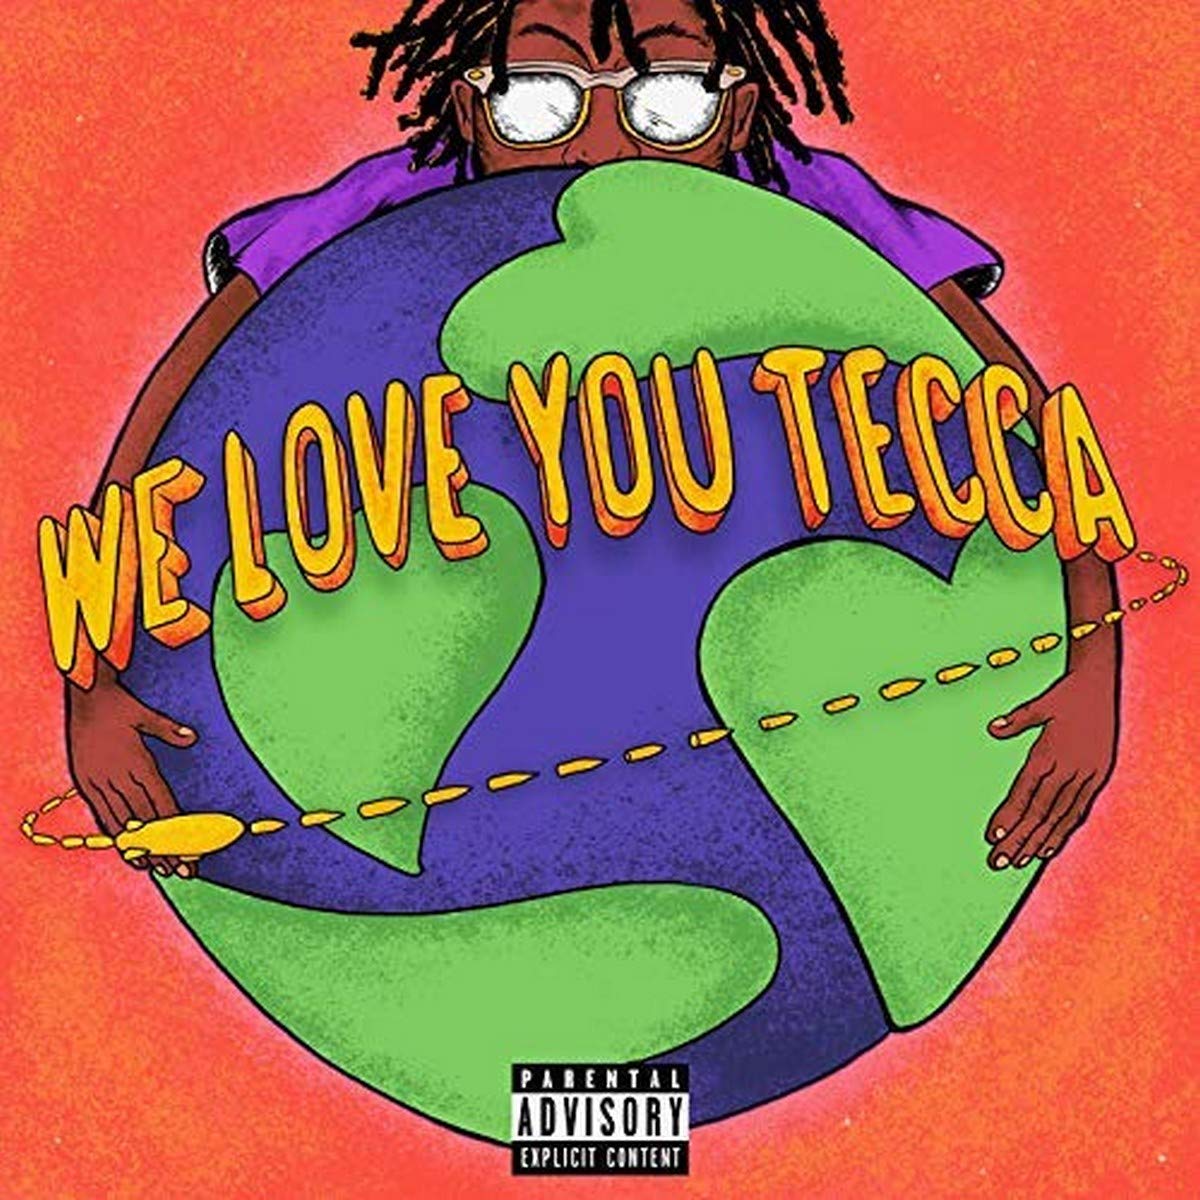 LIL TECCA - WE LOVE YOU TECCA Vinyl LP